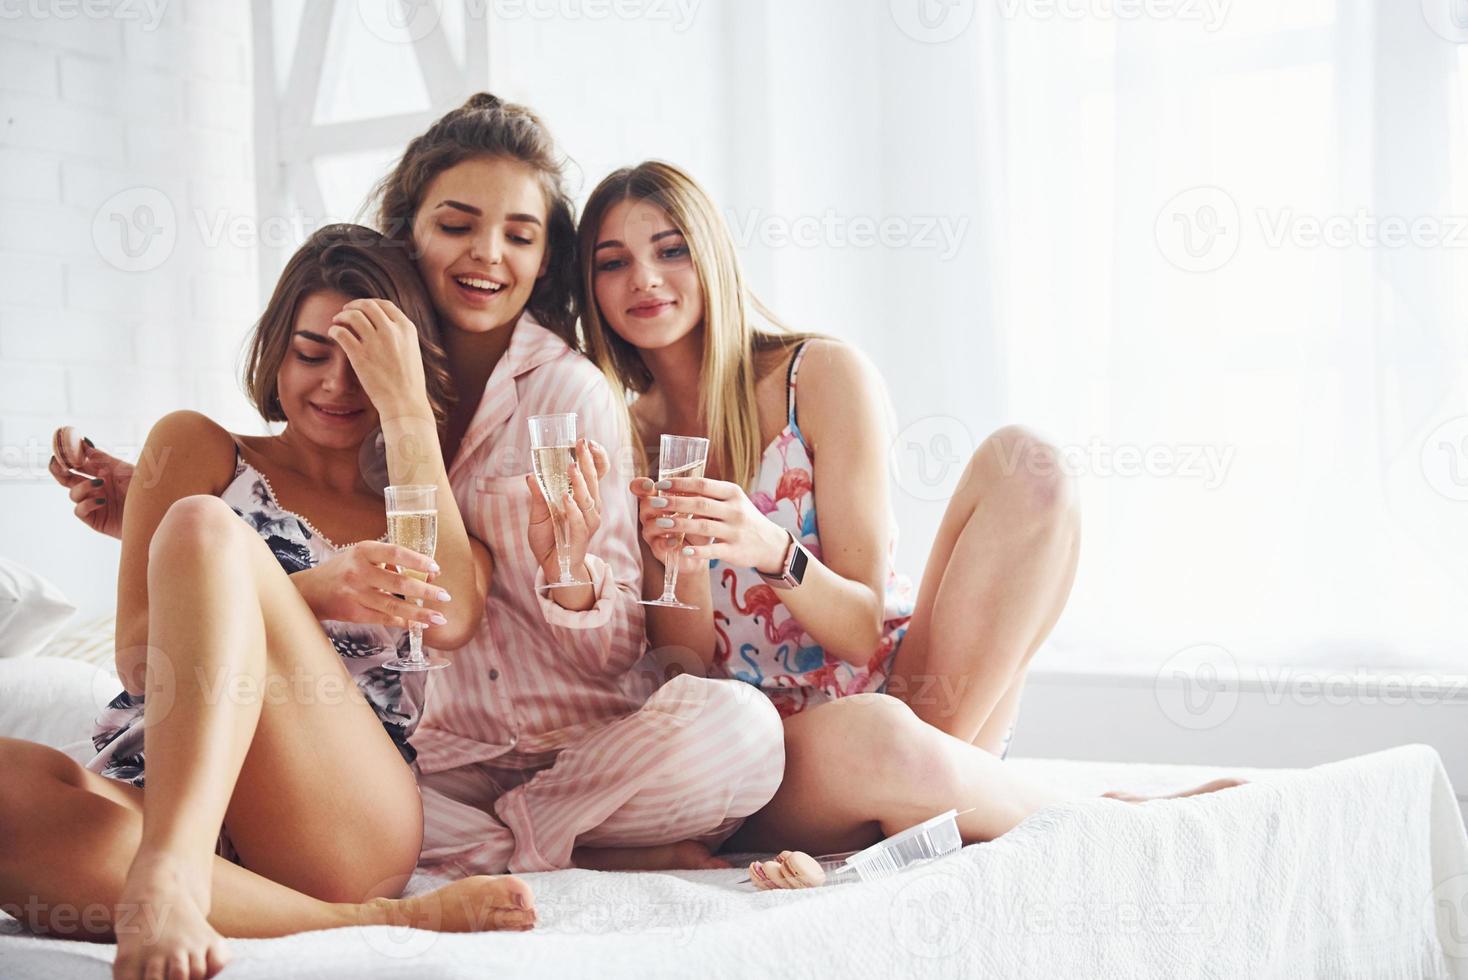 celebrando con vasos de alcohol en las manos. amigas felices pasando un buen rato en la fiesta de pijamas en el dormitorio foto